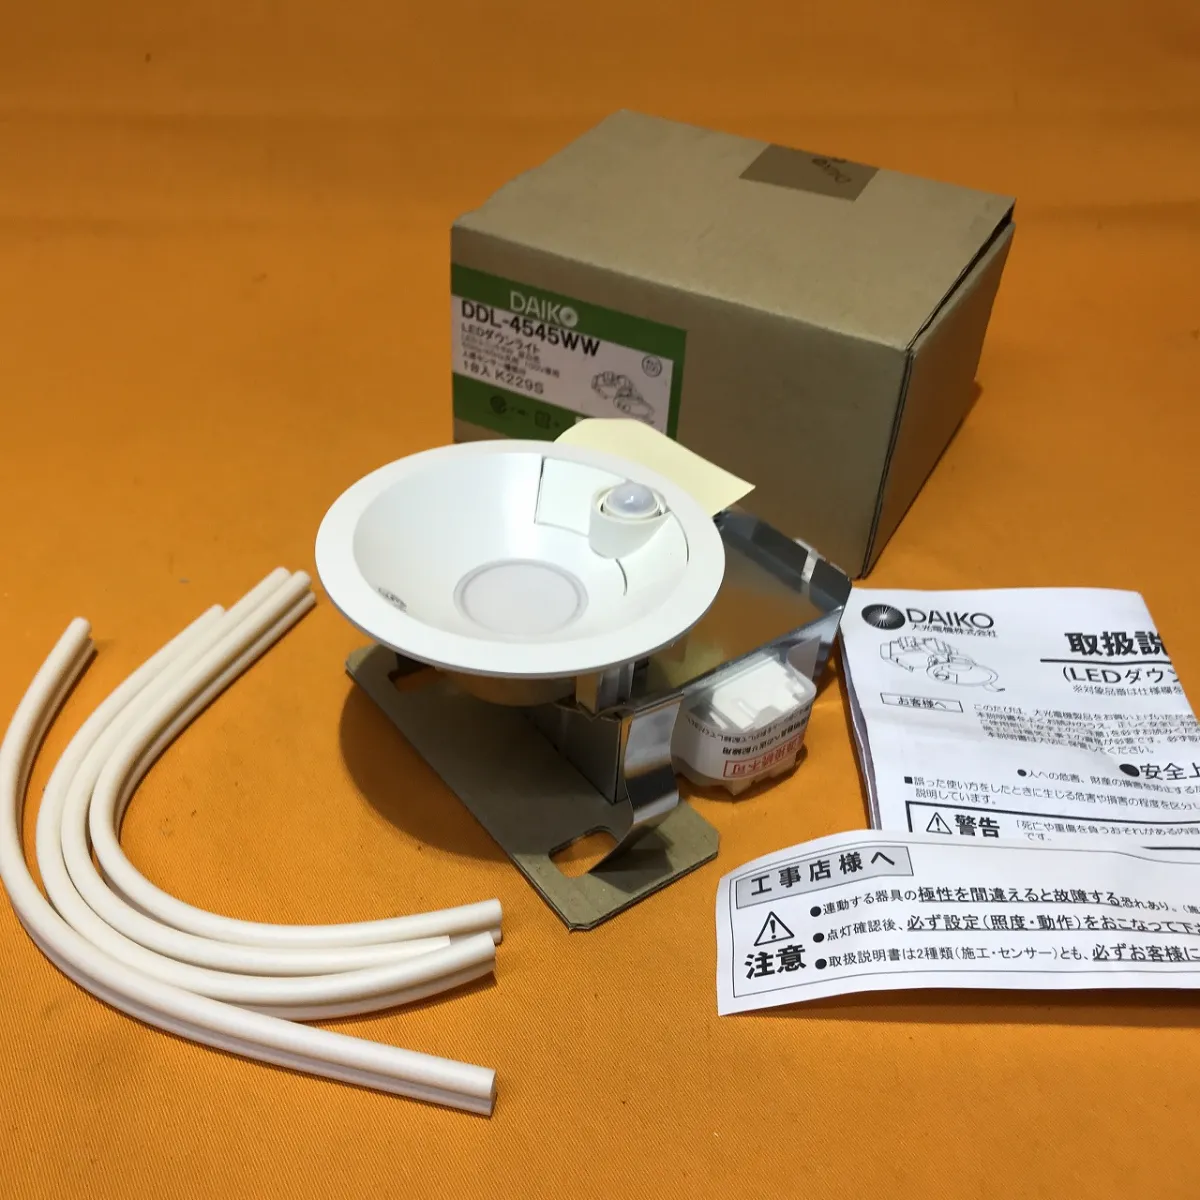 人感センサ付LEDダウンライト DAIKO DDL-4545WW | サテイゴー